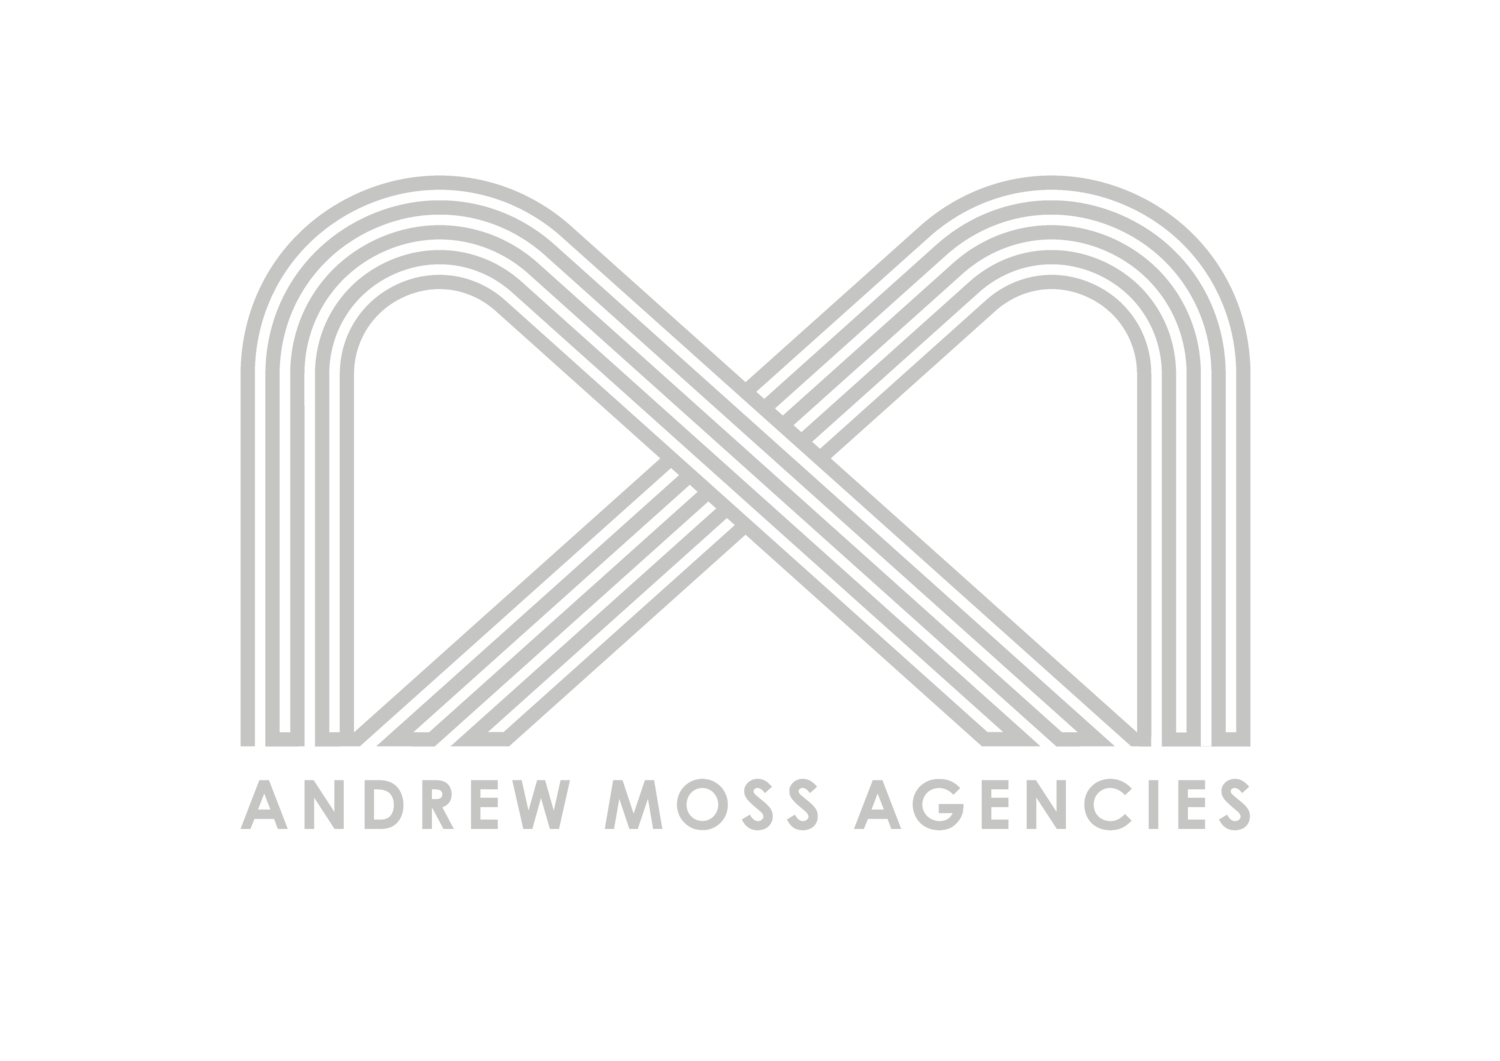 Andrew Moss Agencies